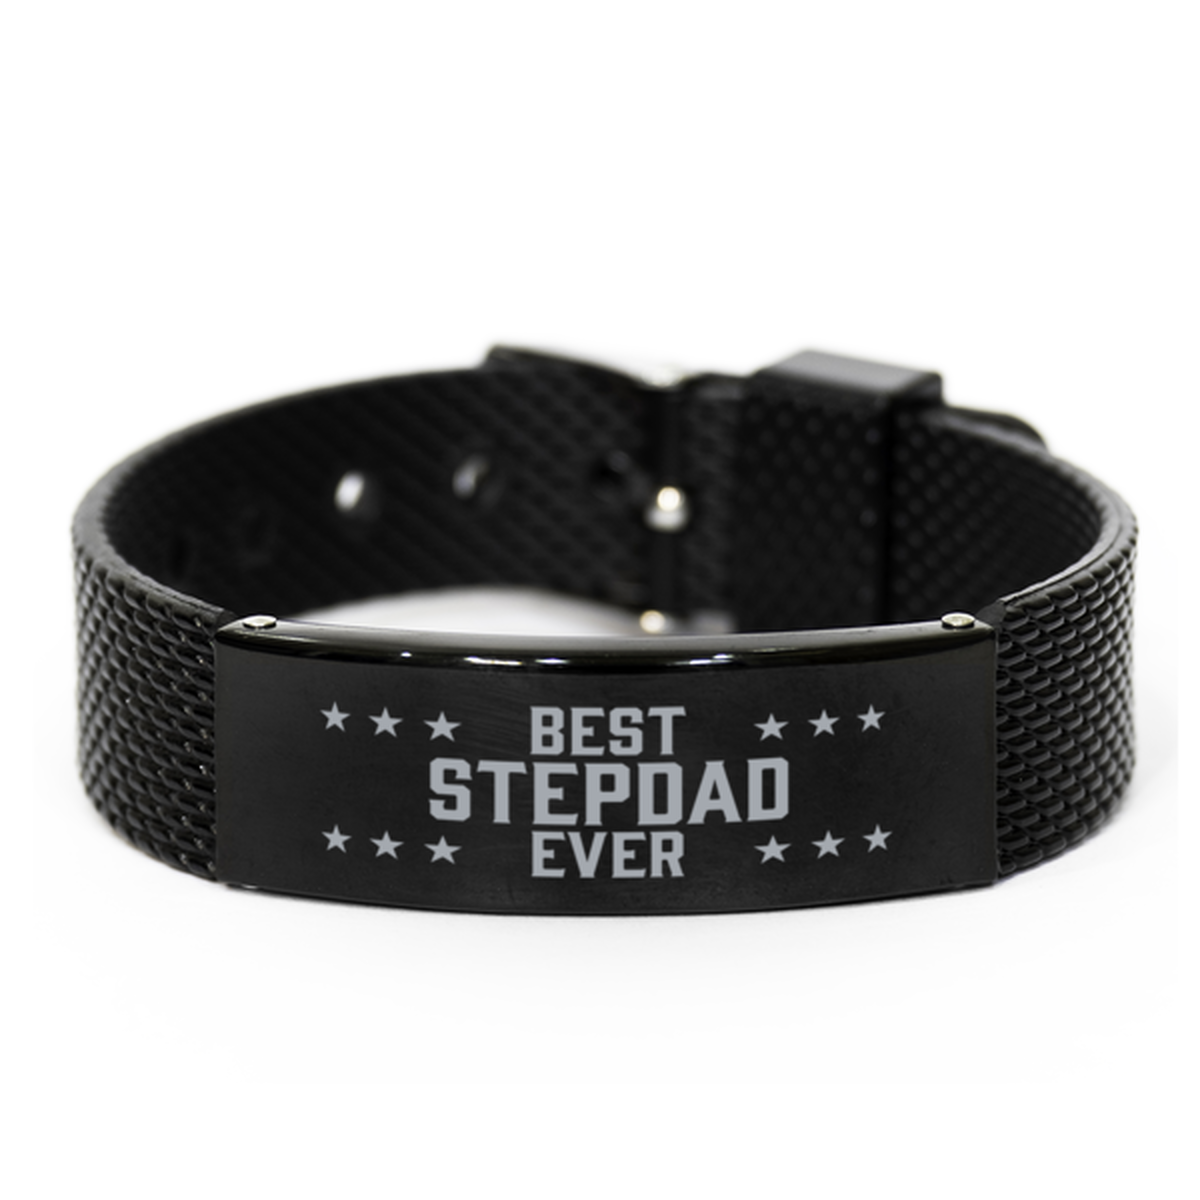 Best Stepdad Ever Stepdad Gifts, Gag Engraved Bracelet For Stepdad, Best Family Gifts For Men